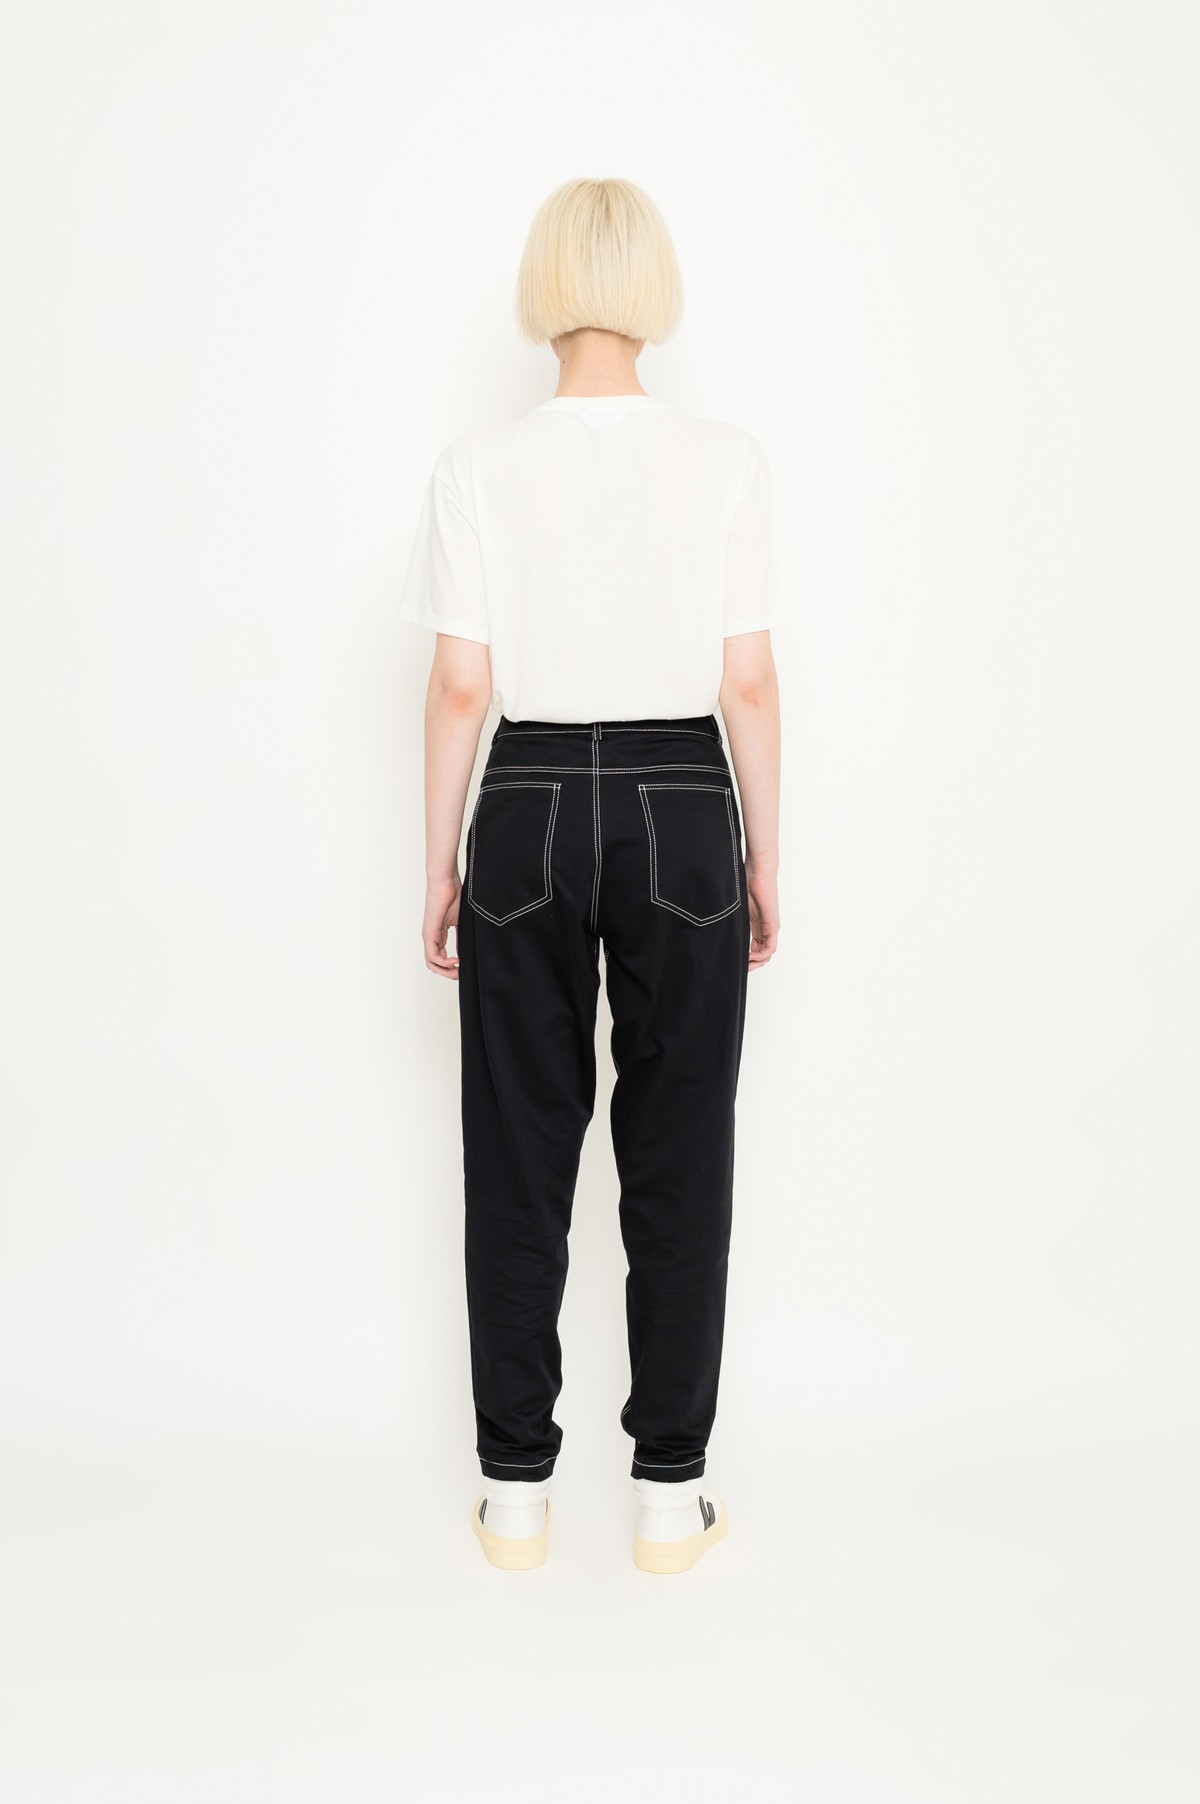 calça estilo 5 pockets em algodão | 5 pockets cotton pants